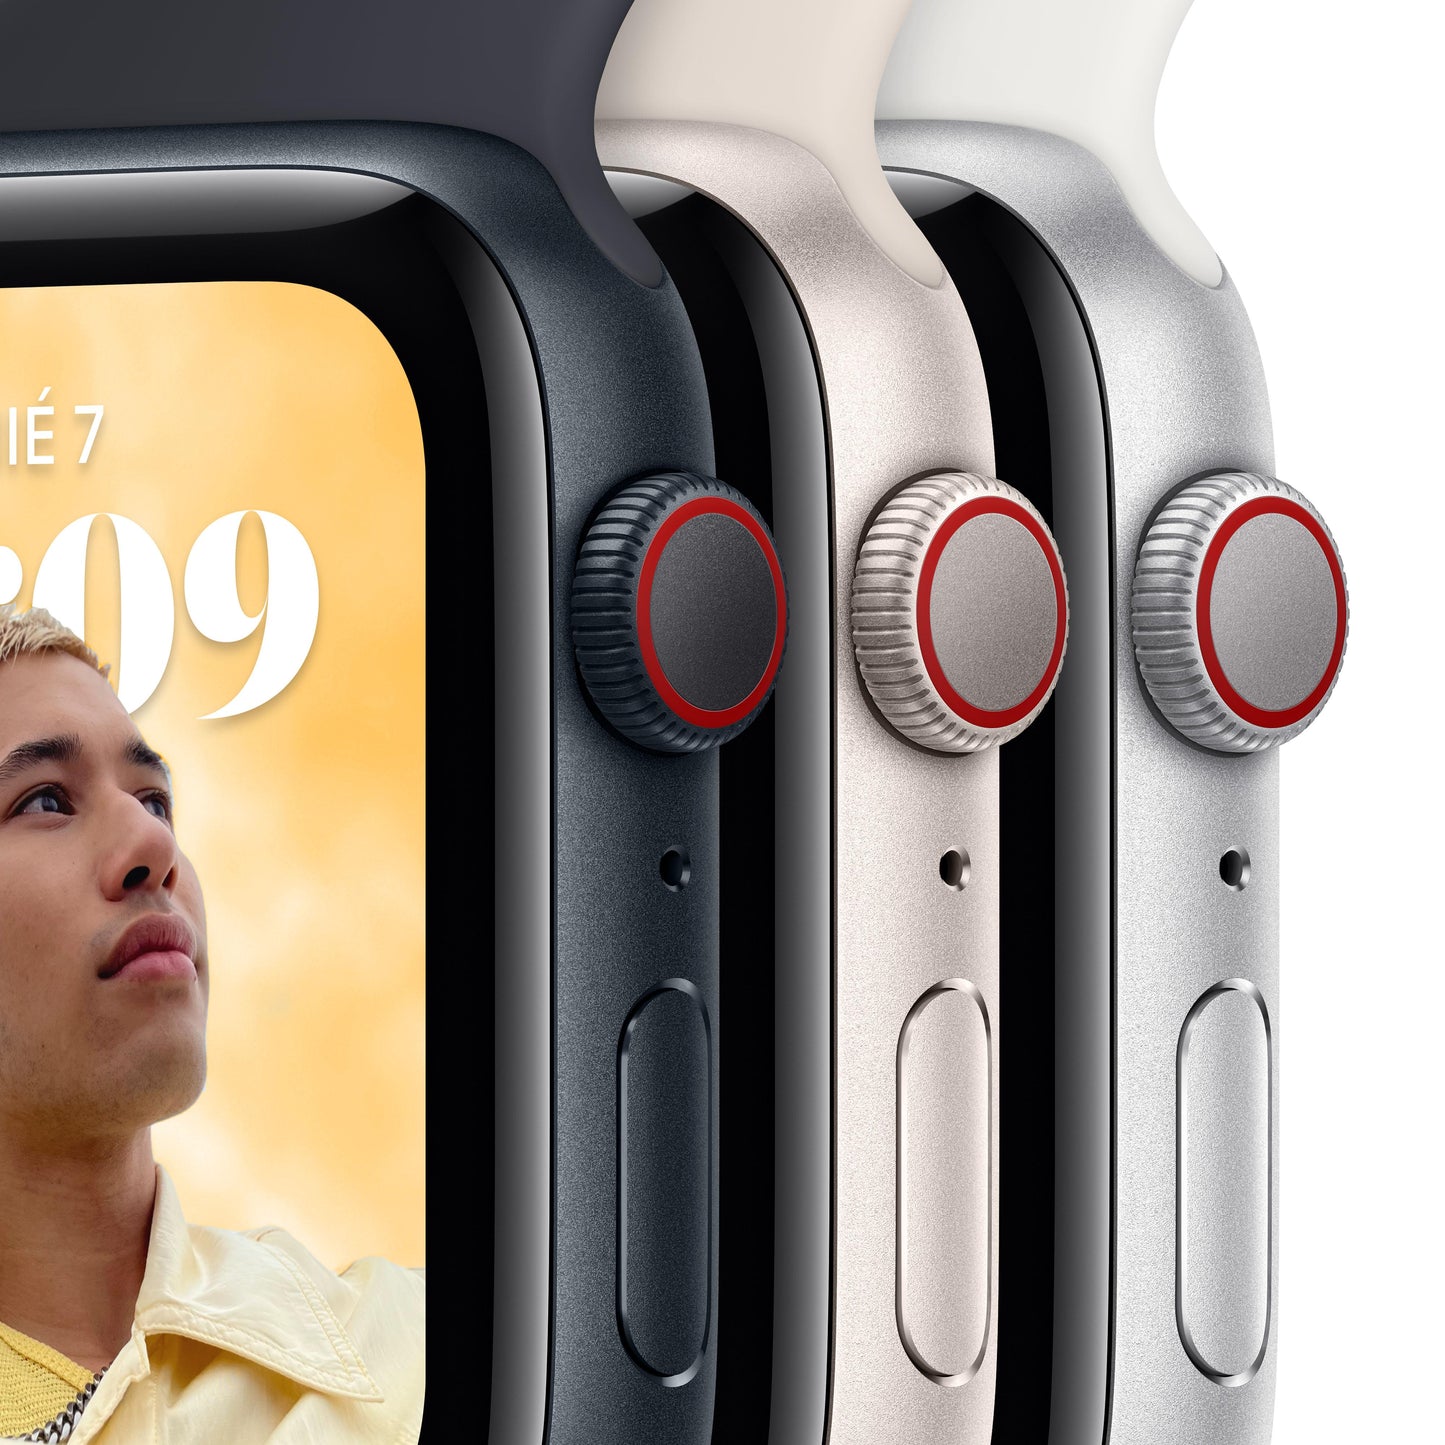 Apple Watch SE (GPS + Cellular) - Caja de aluminio en color medianoche de 40 mm - Correa deportiva en color medianoche - Talla única - Rossellimac